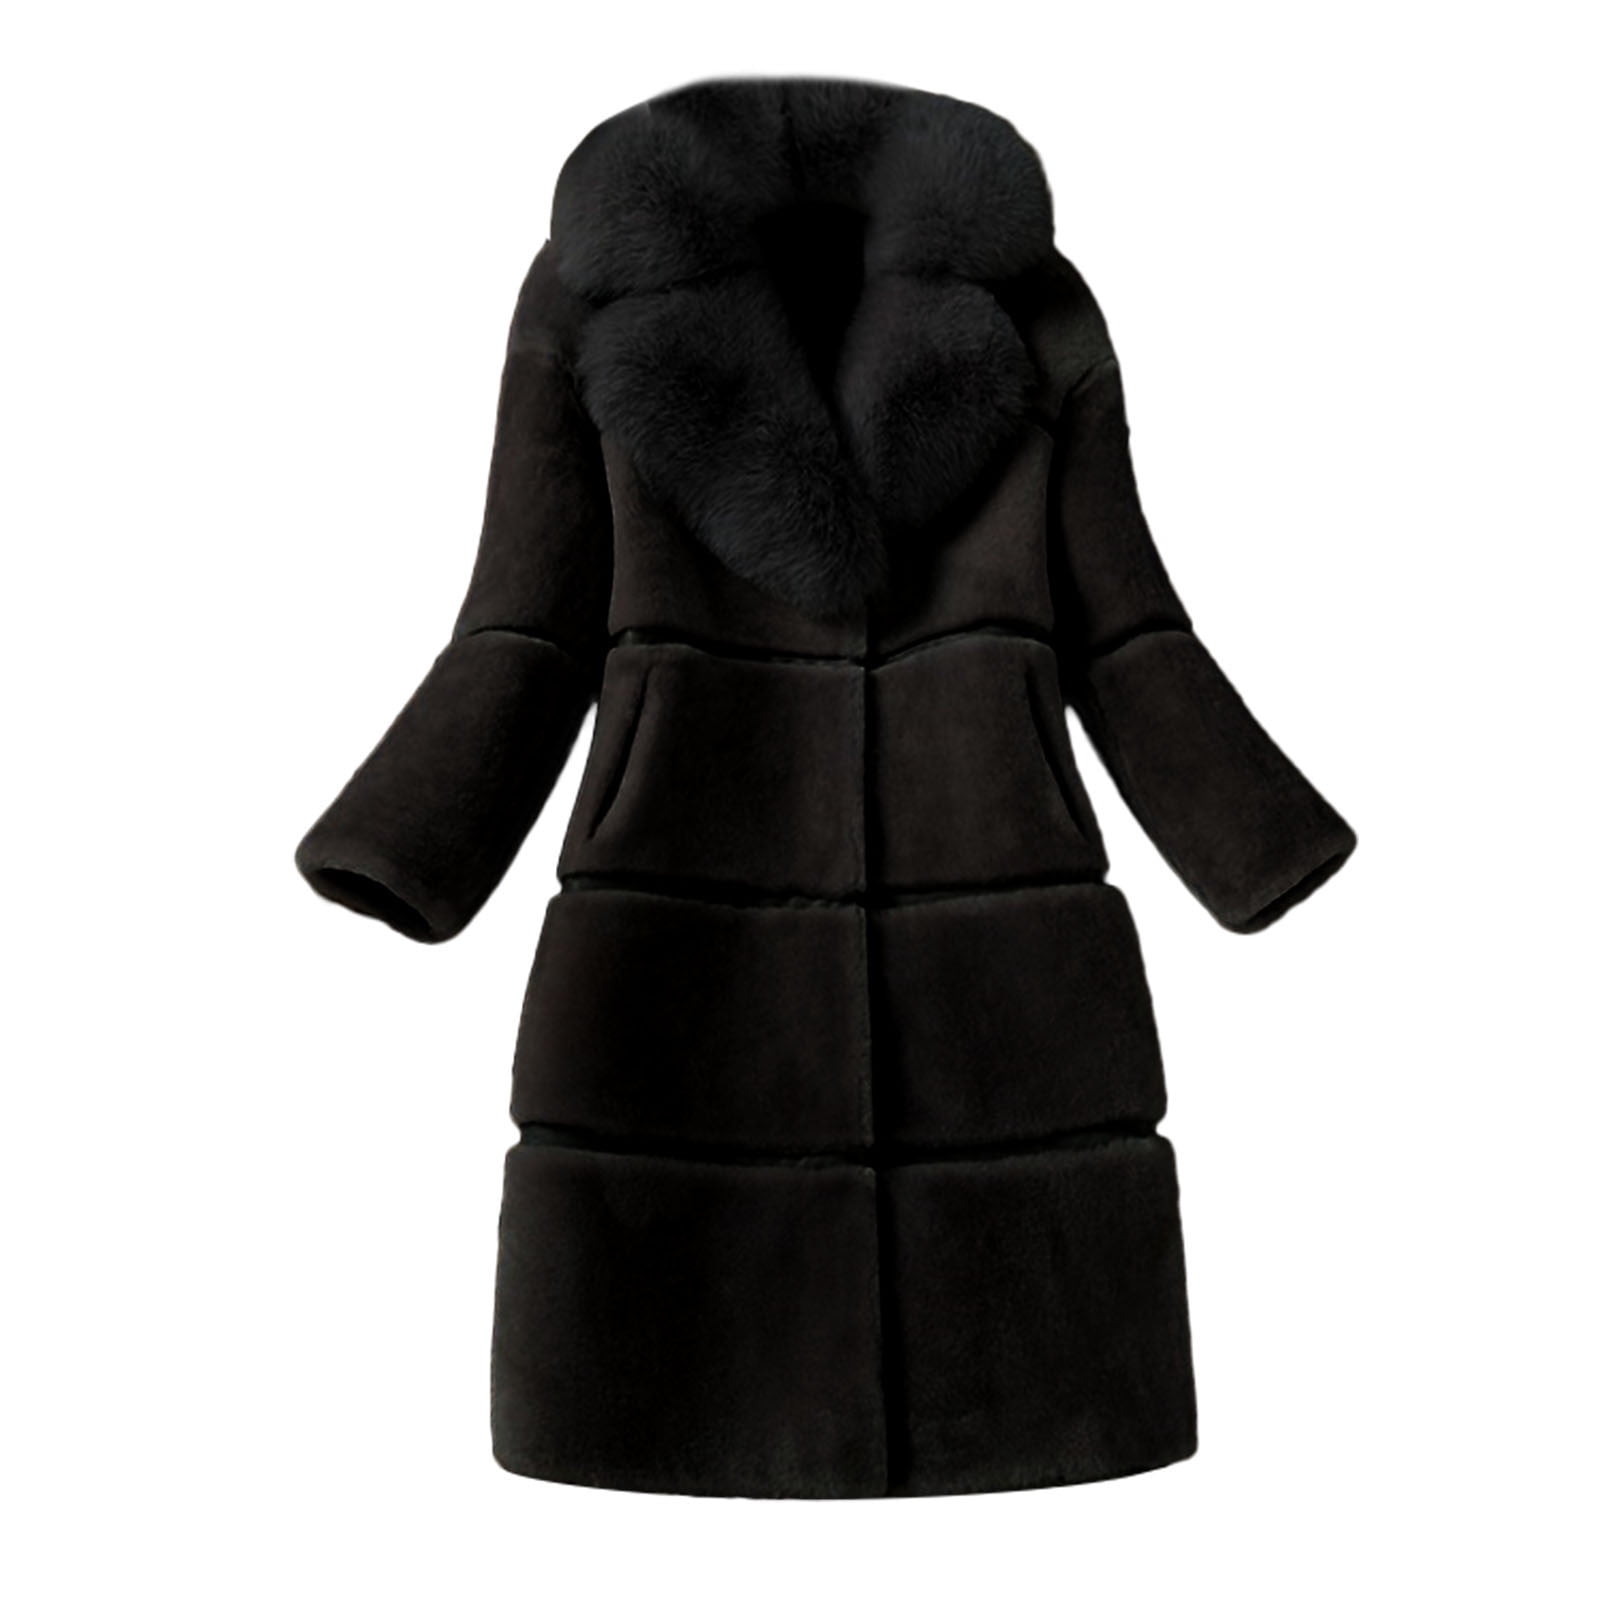 ACE SHOCK Faux Fur Coat Women Hooded Long Winter Jacket Casual Warm Outwear 2 Colors Size XS-XL